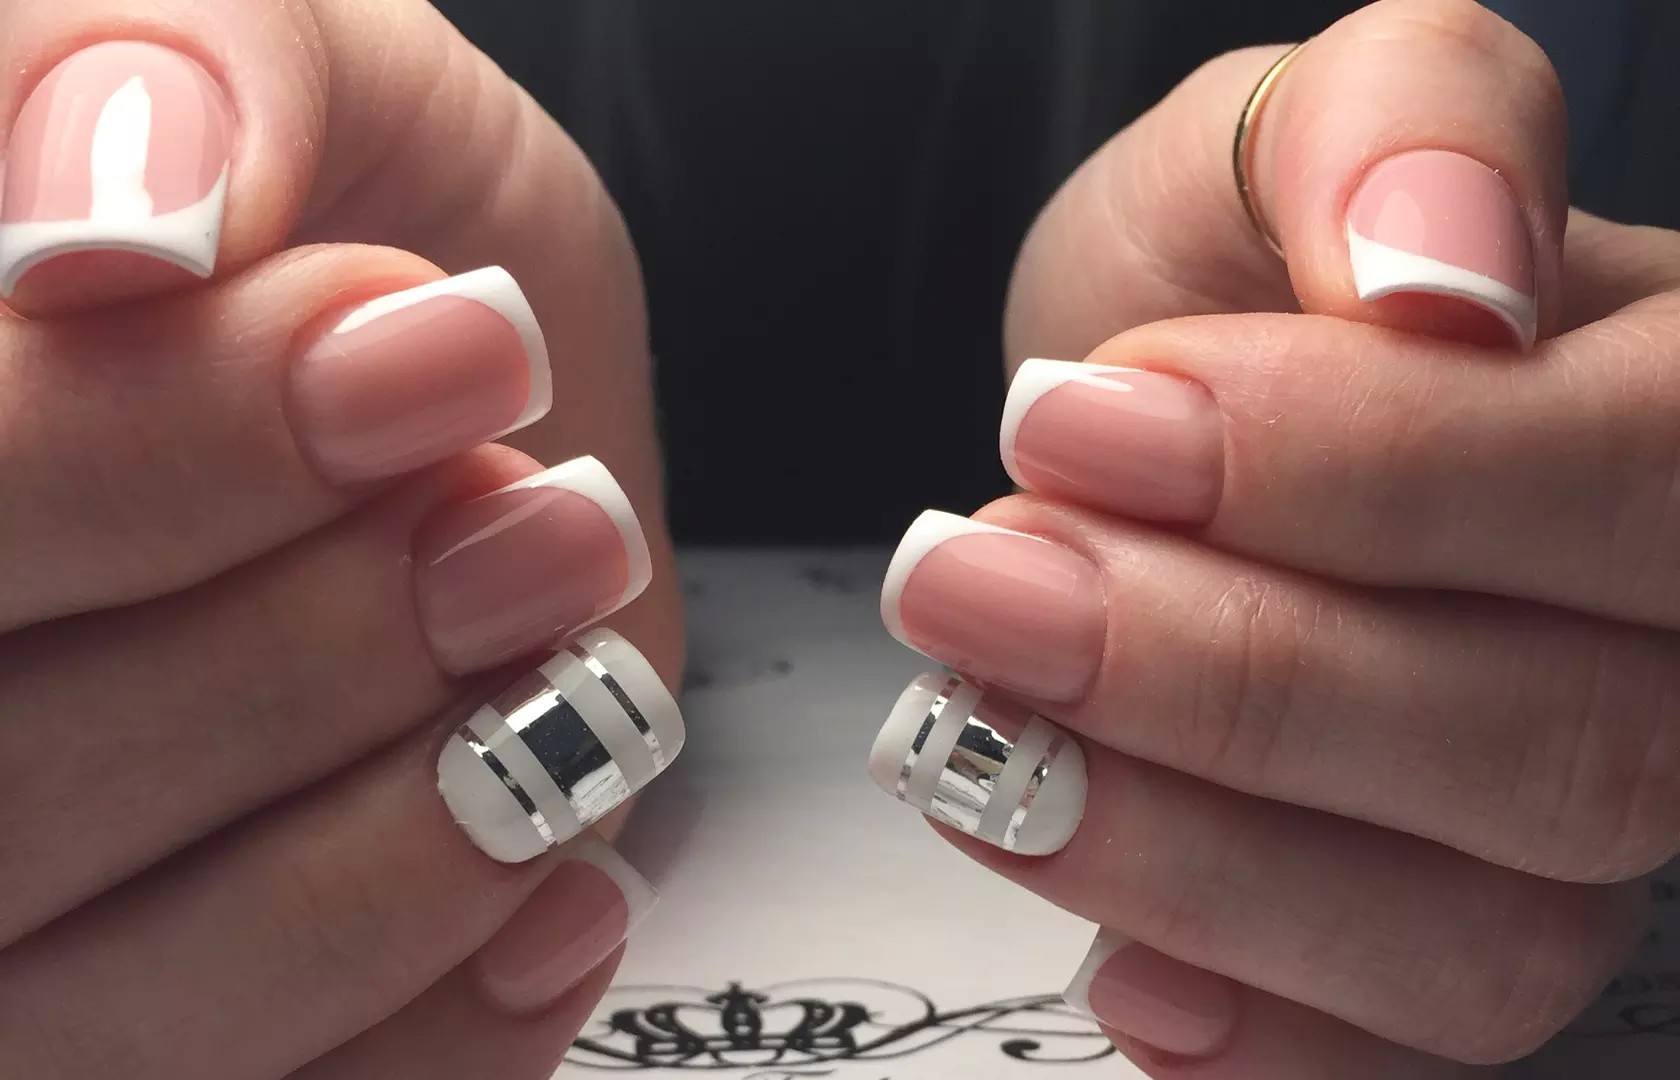 дизайн ногтей на короткие ногти квадратной формы